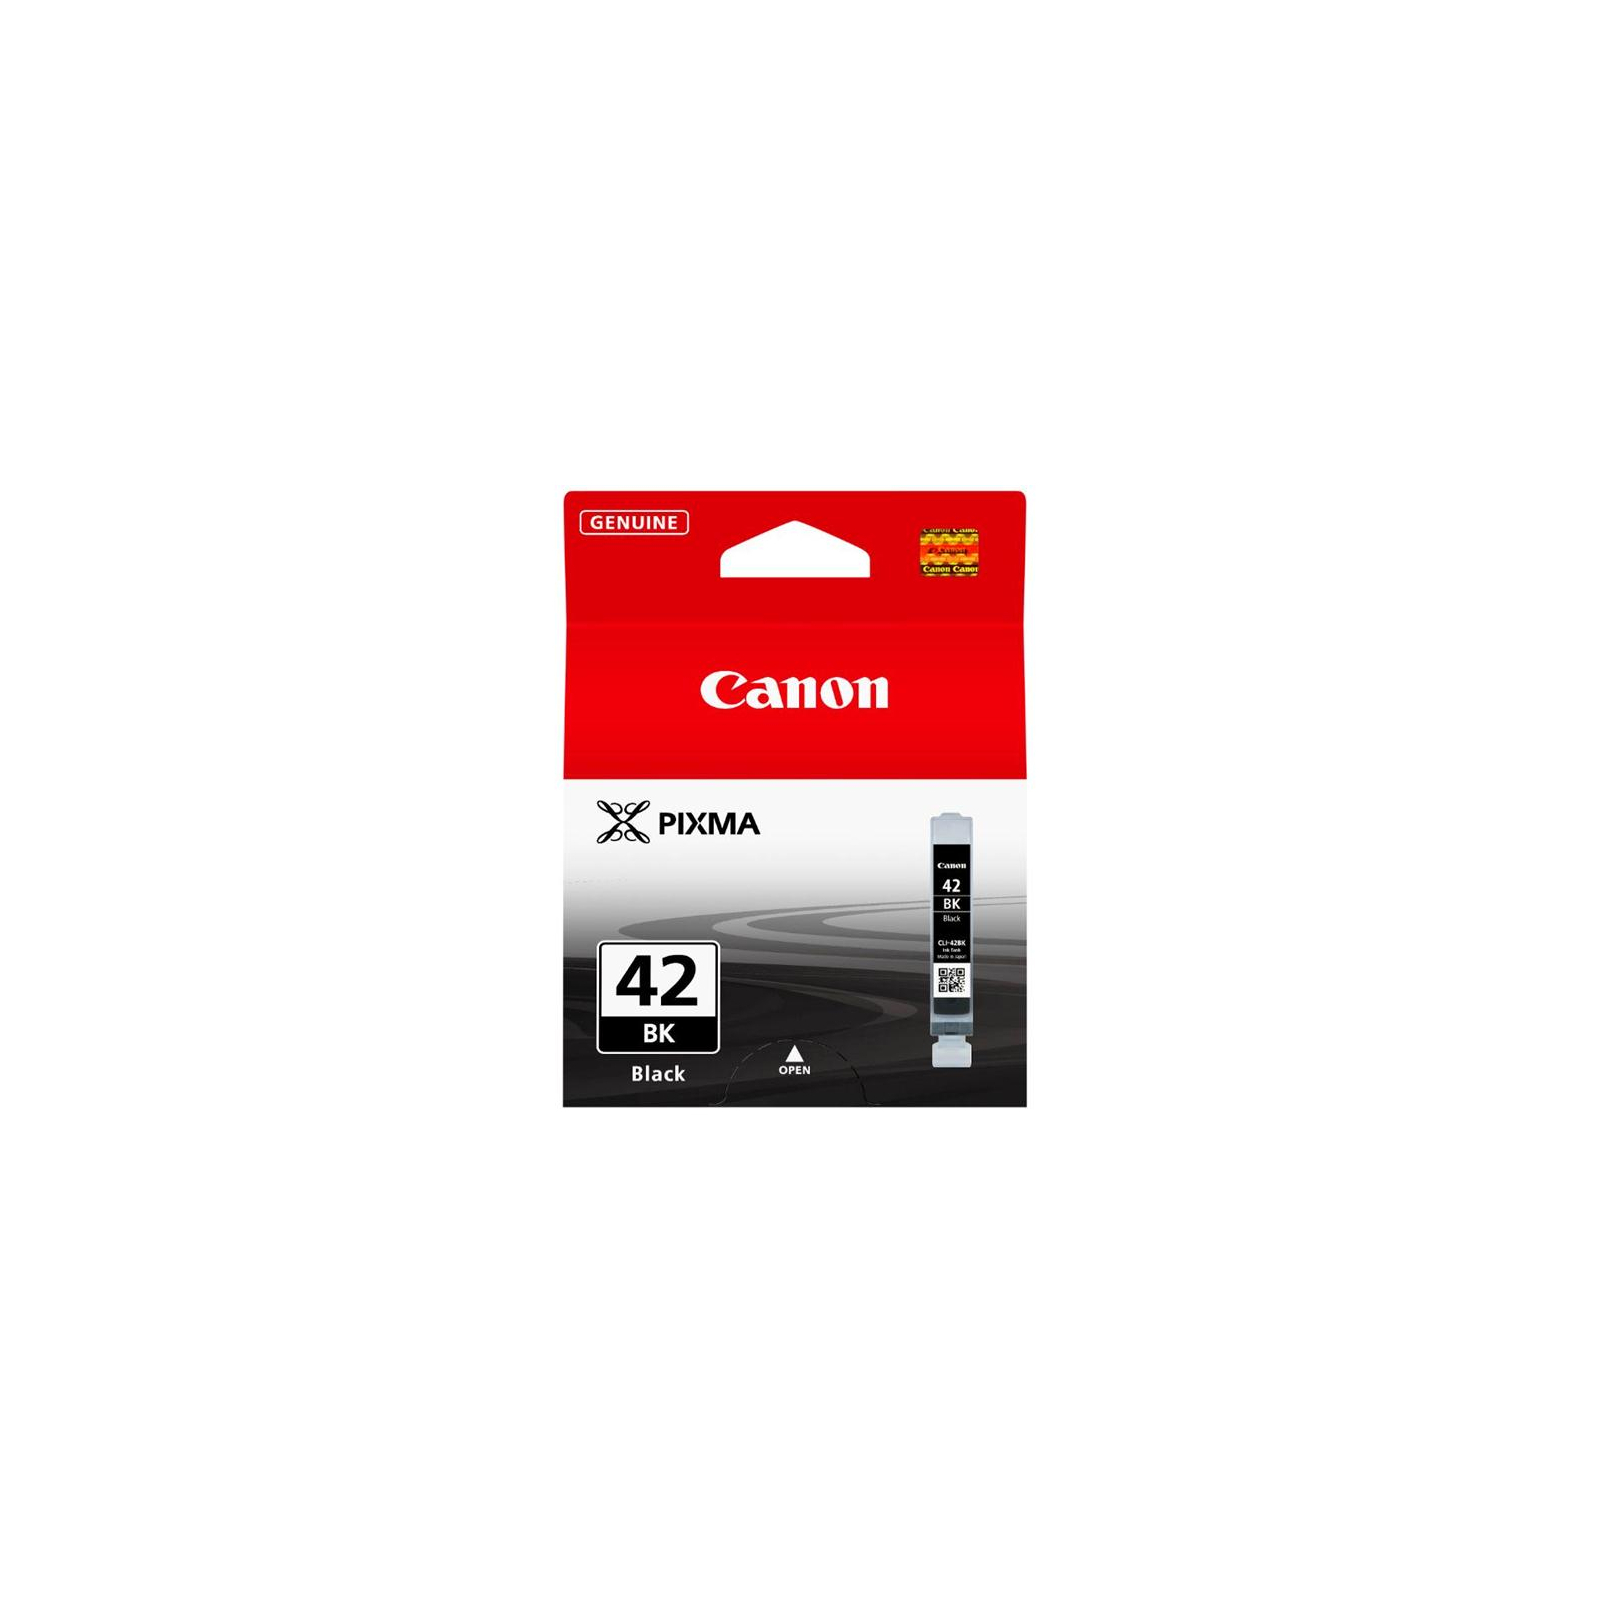 Картридж Canon CLI-42 Magenta для PIXMA PRO-100 (6386B001) изображение 2